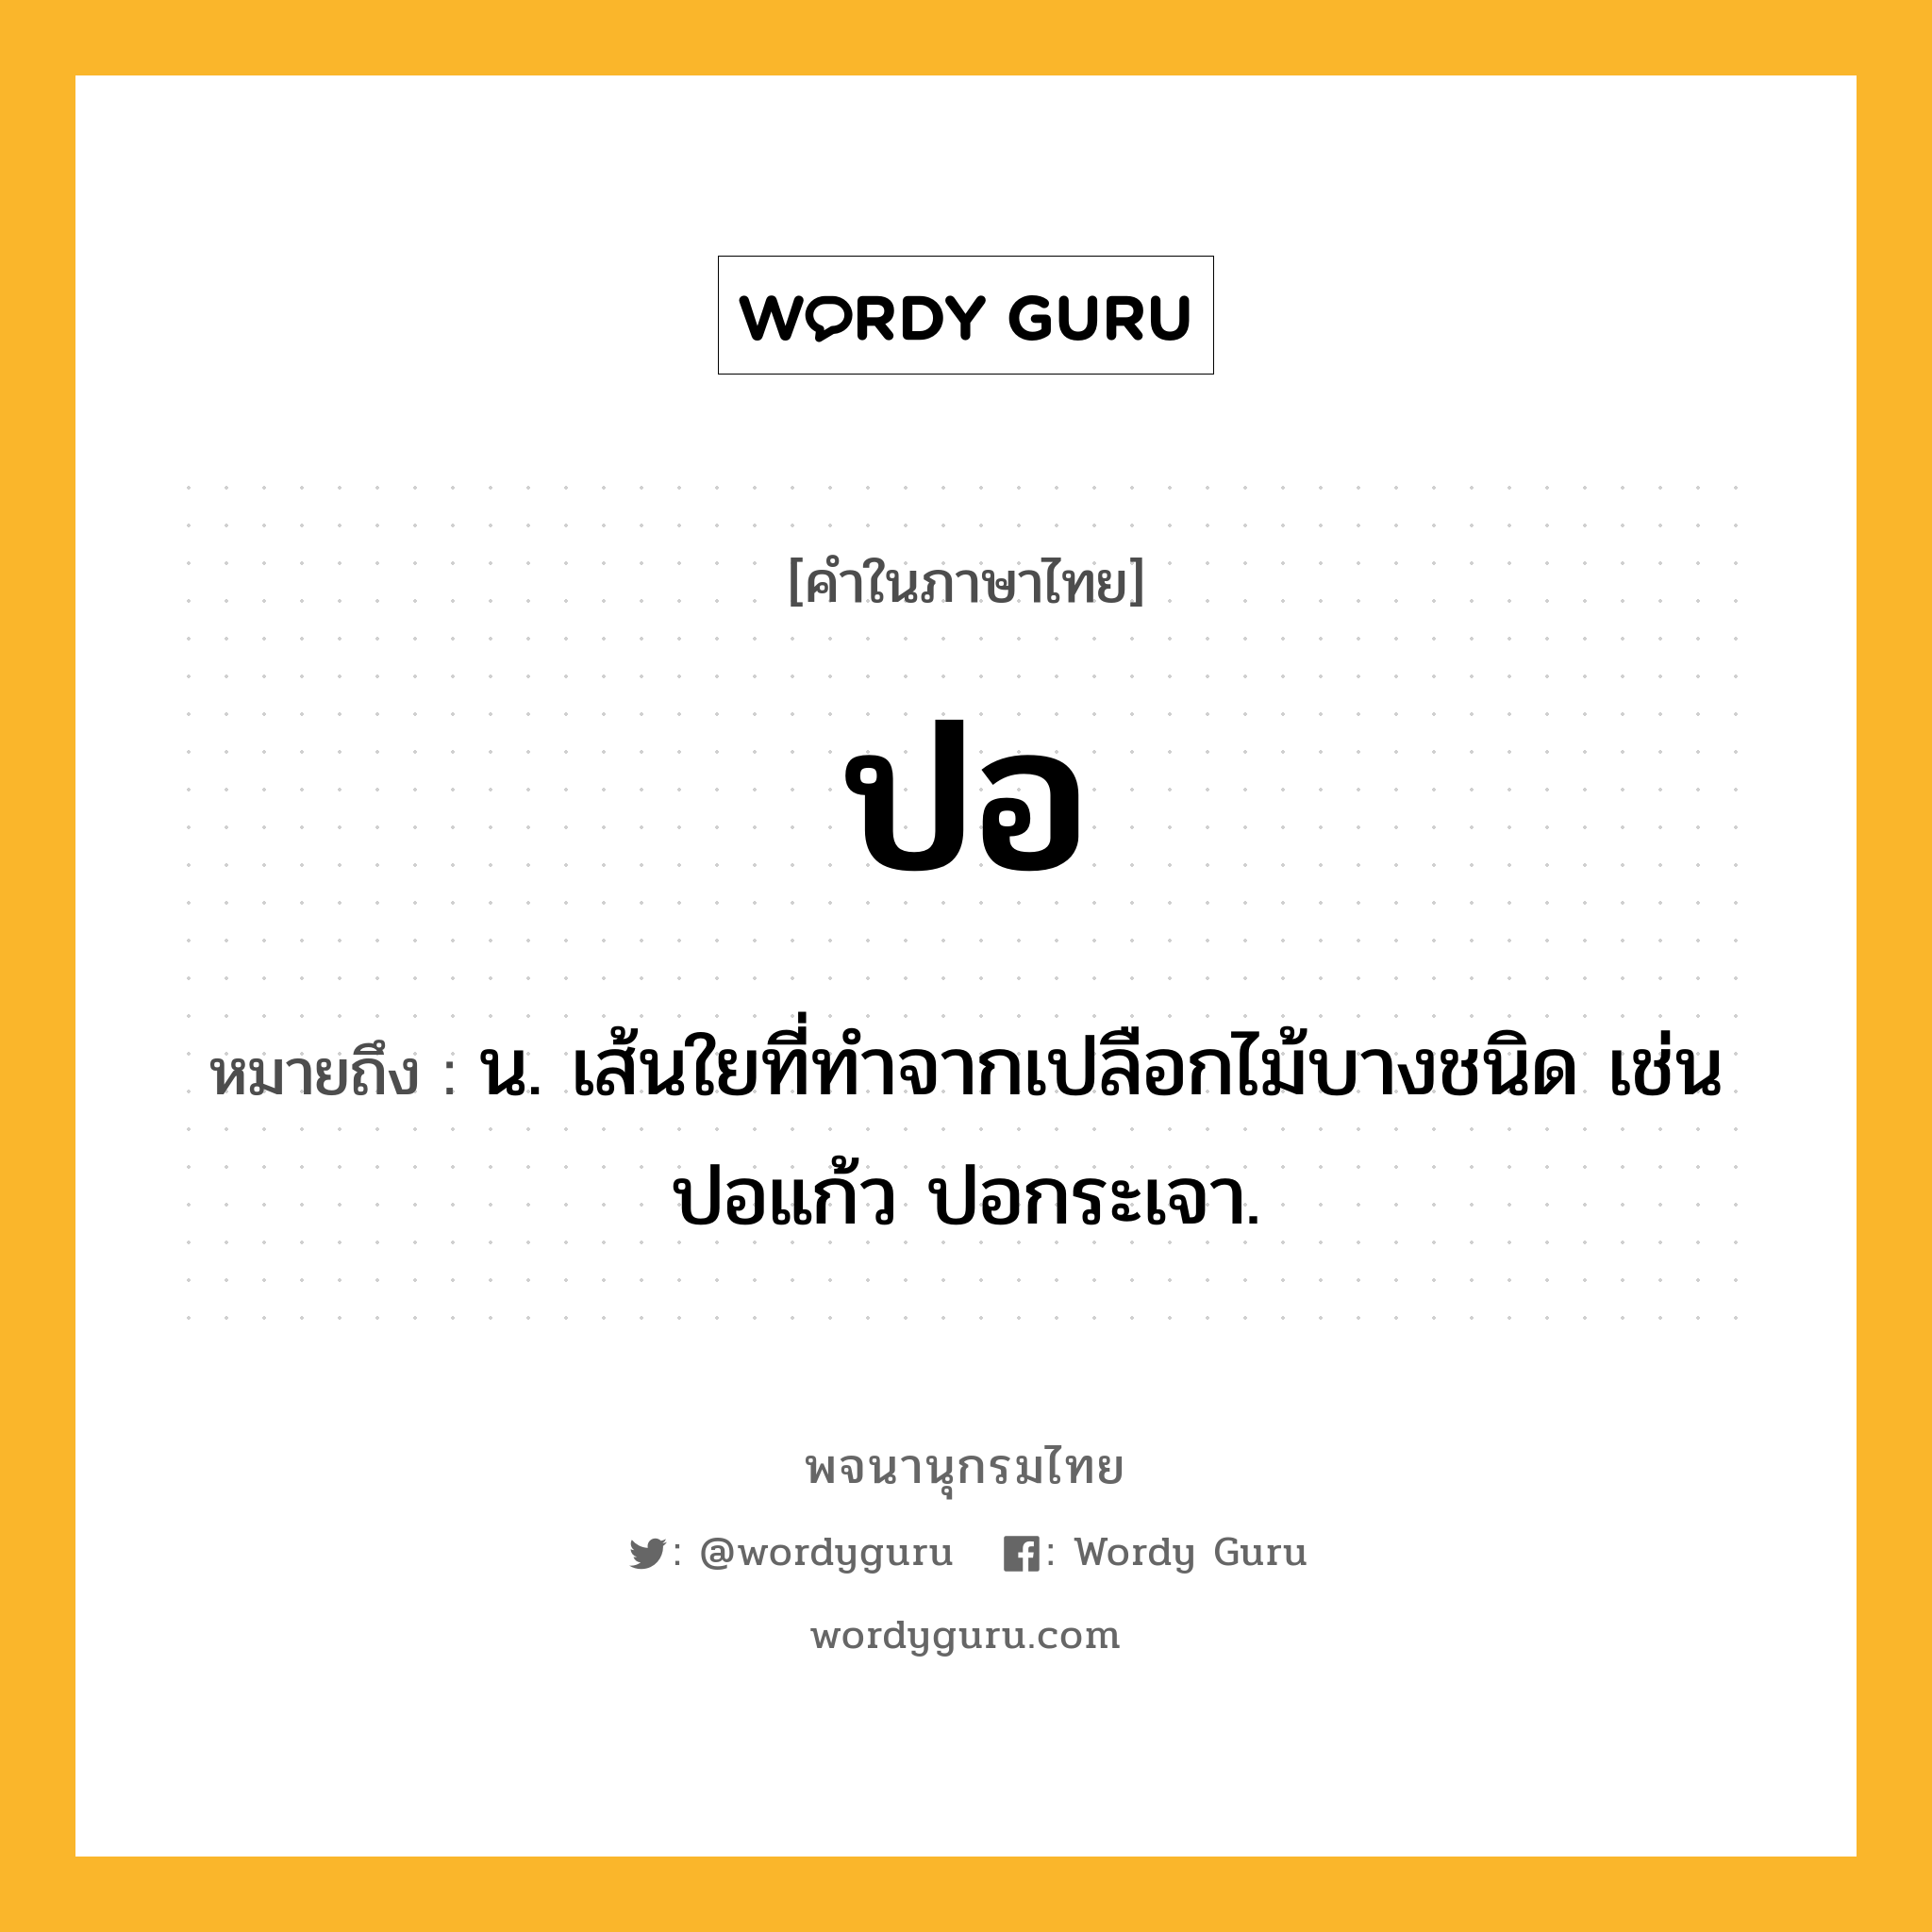 ปอ ความหมาย หมายถึงอะไร?, คำในภาษาไทย ปอ หมายถึง น. เส้นใยที่ทําจากเปลือกไม้บางชนิด เช่น ปอแก้ว ปอกระเจา.